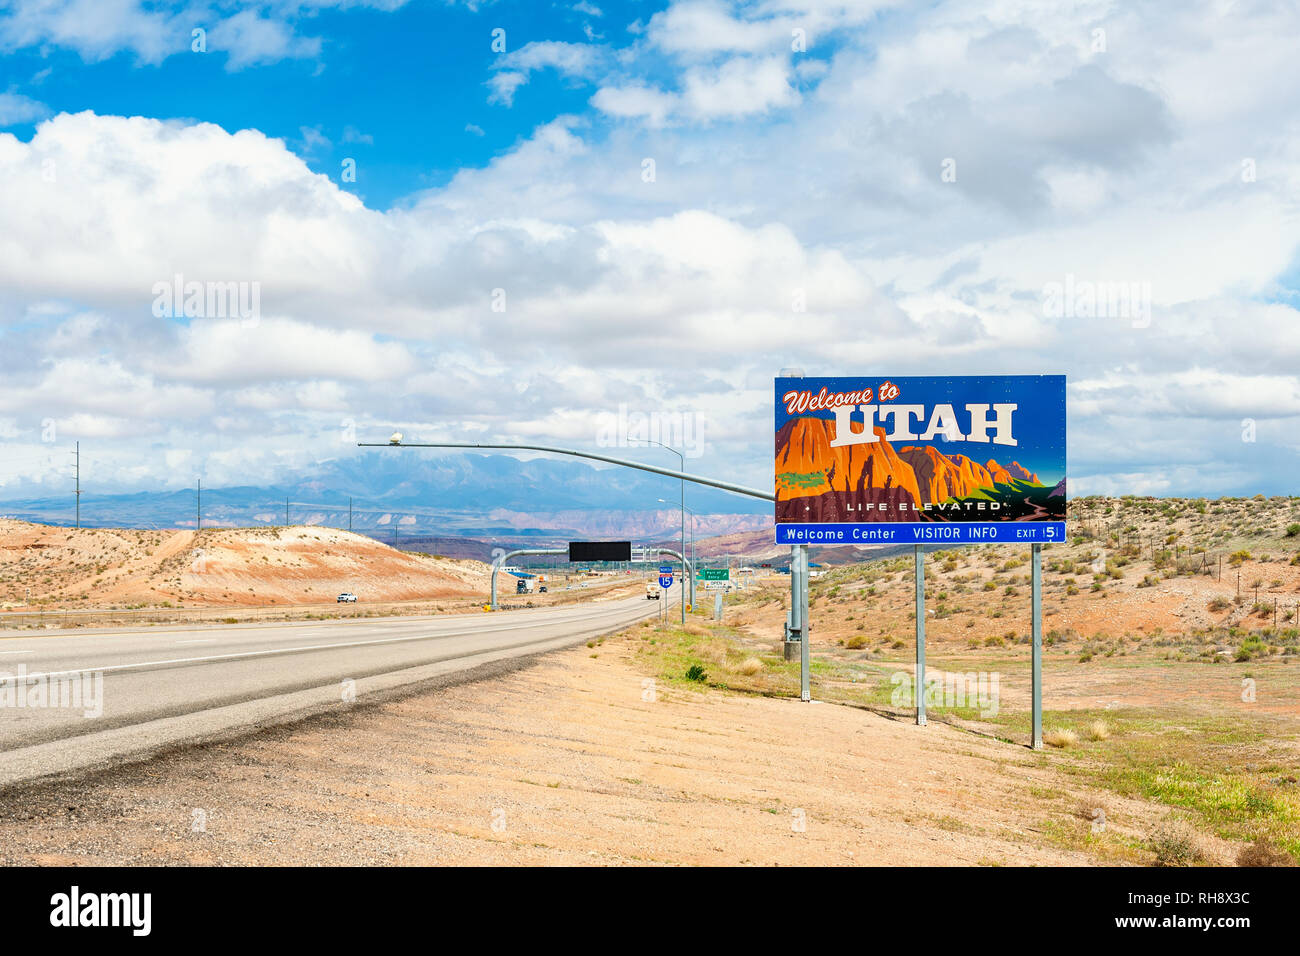 Bienvenido a Utah, señales de carretera, en la frontera de los estados de Utah y Arizona de EE.UU. Foto de stock